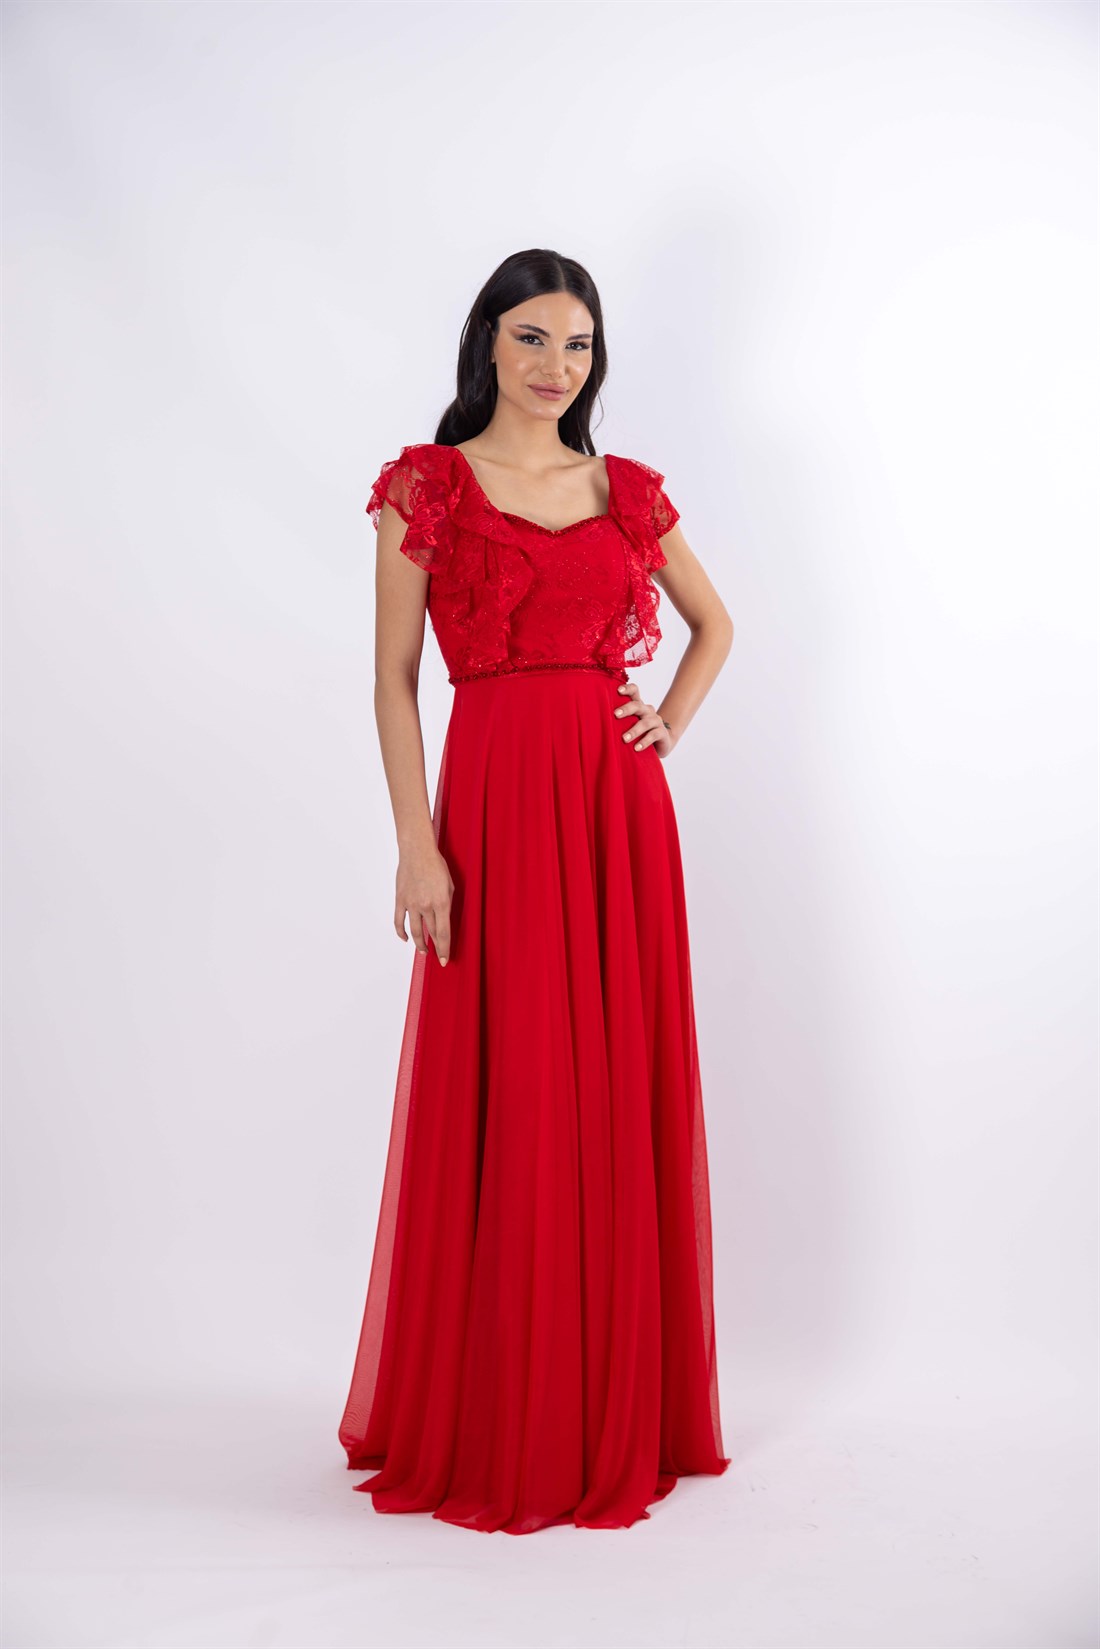 Dantel Askılı Şifon Kumaş Etek Helen Kırmızı Abiye Elbise - egelin